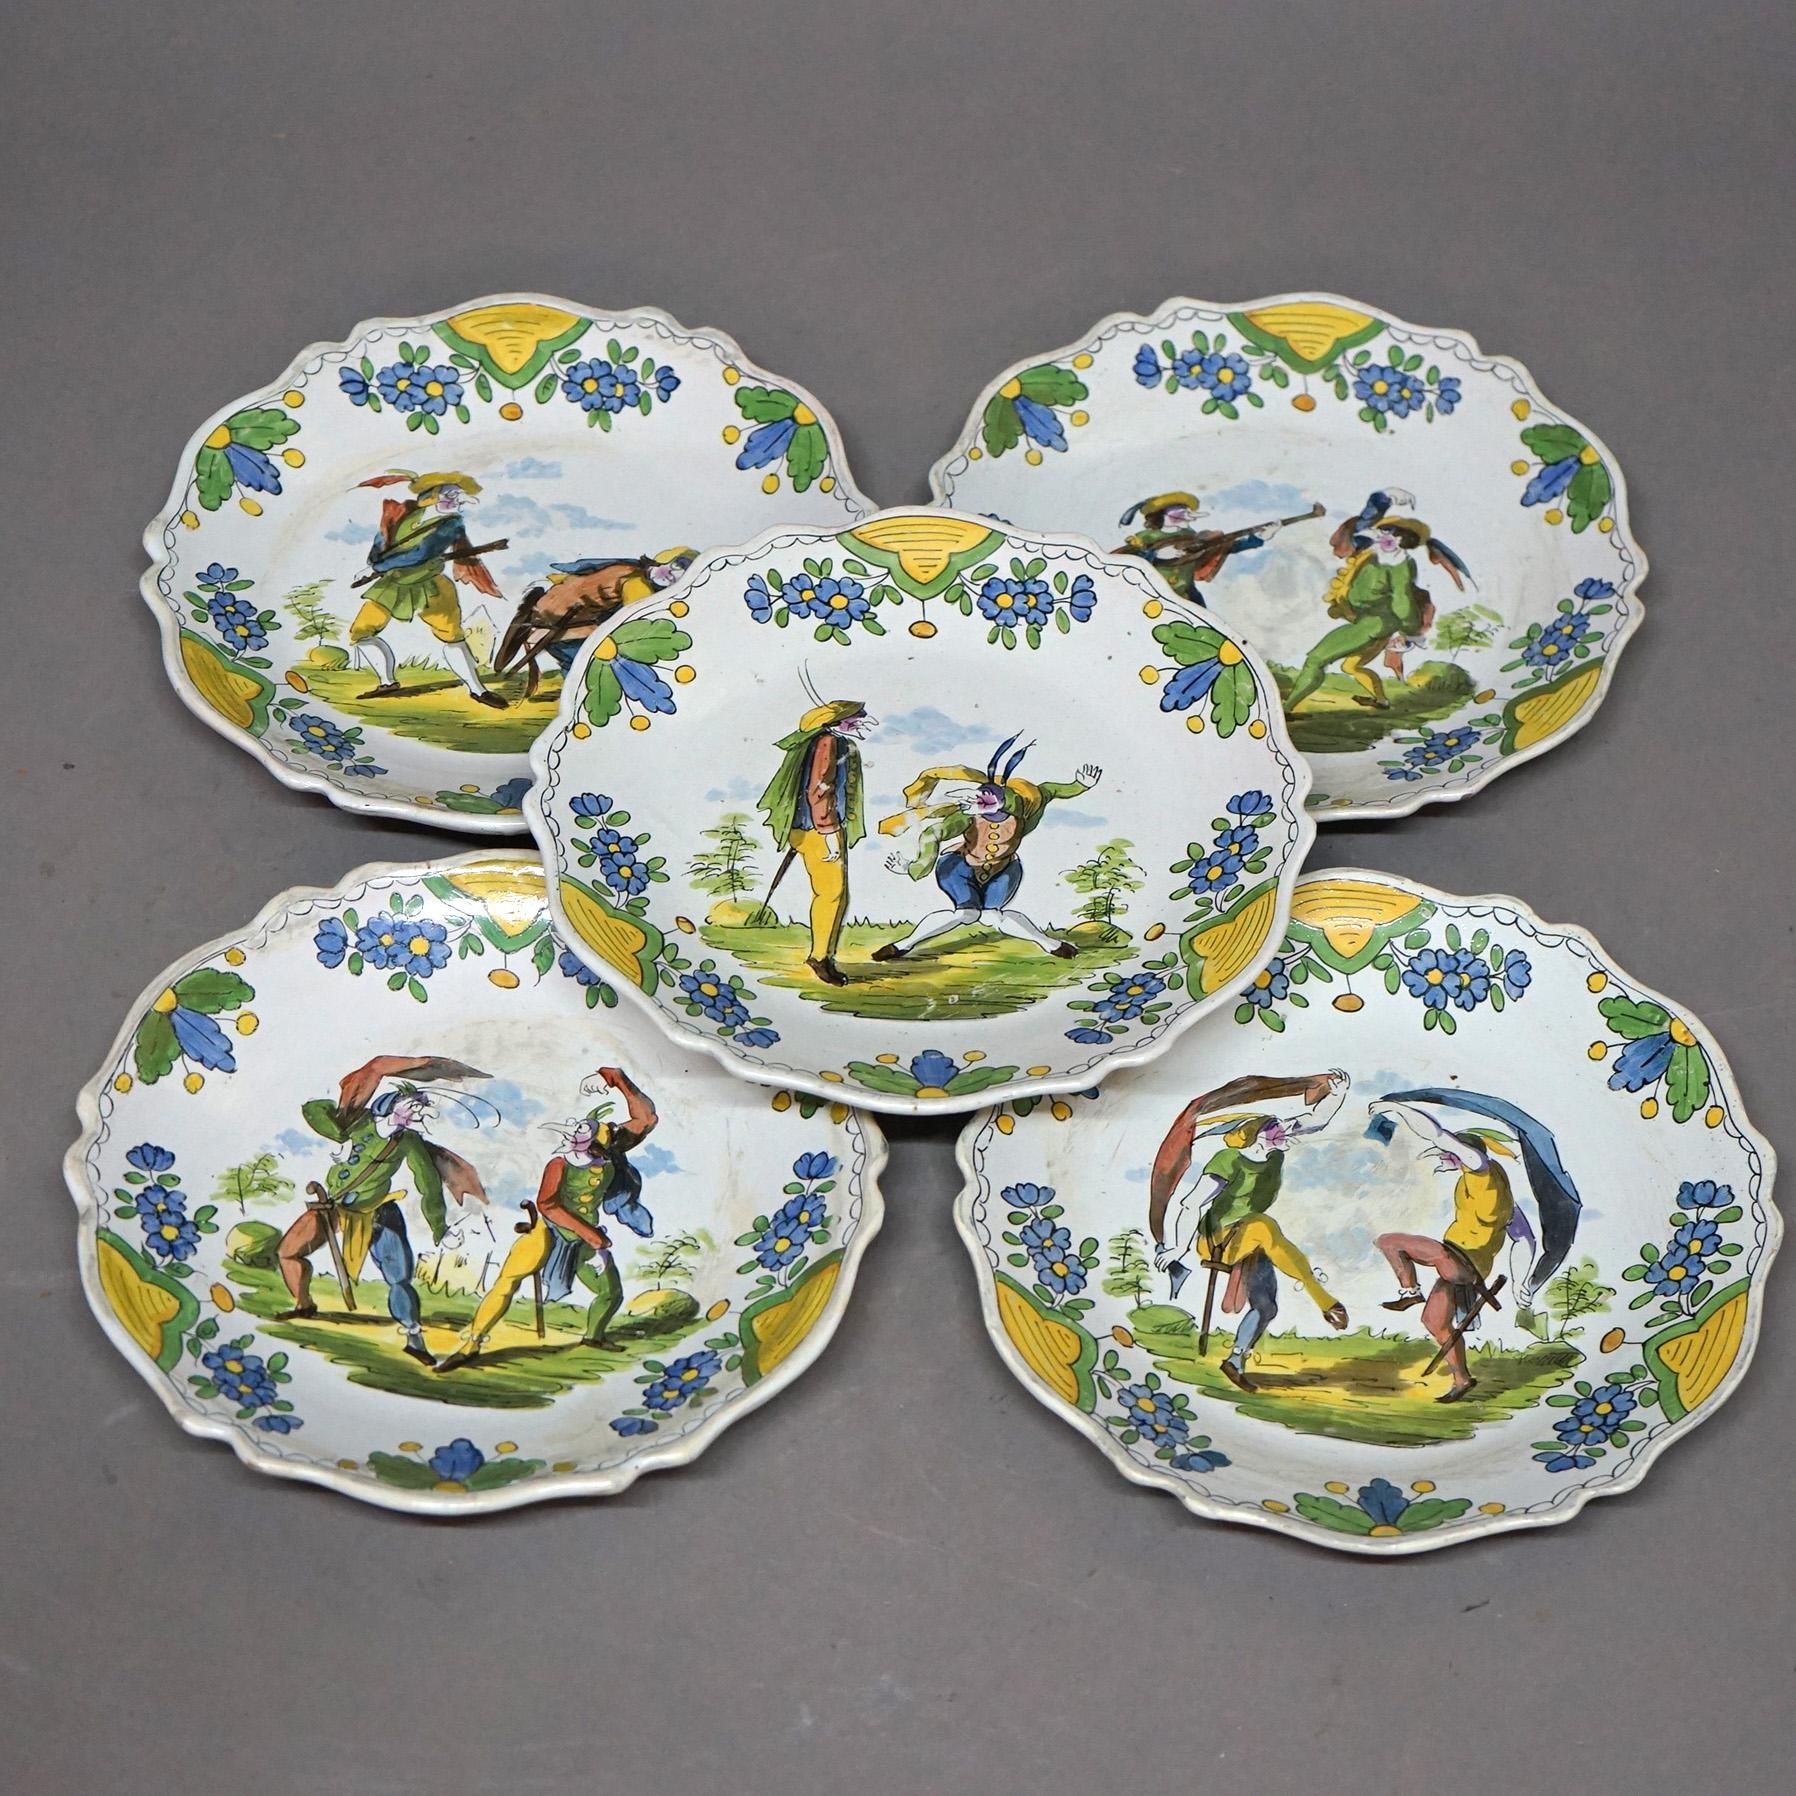 Un ensemble de cinq assiettes de caractère françaises antiques par Les Islettes offrent une construction de poterie en pâte molle Faience peinte à la main avec des figures, fin du 18ème siècle.

Dimensions : 1''H x 9.75''L x 9.75''P